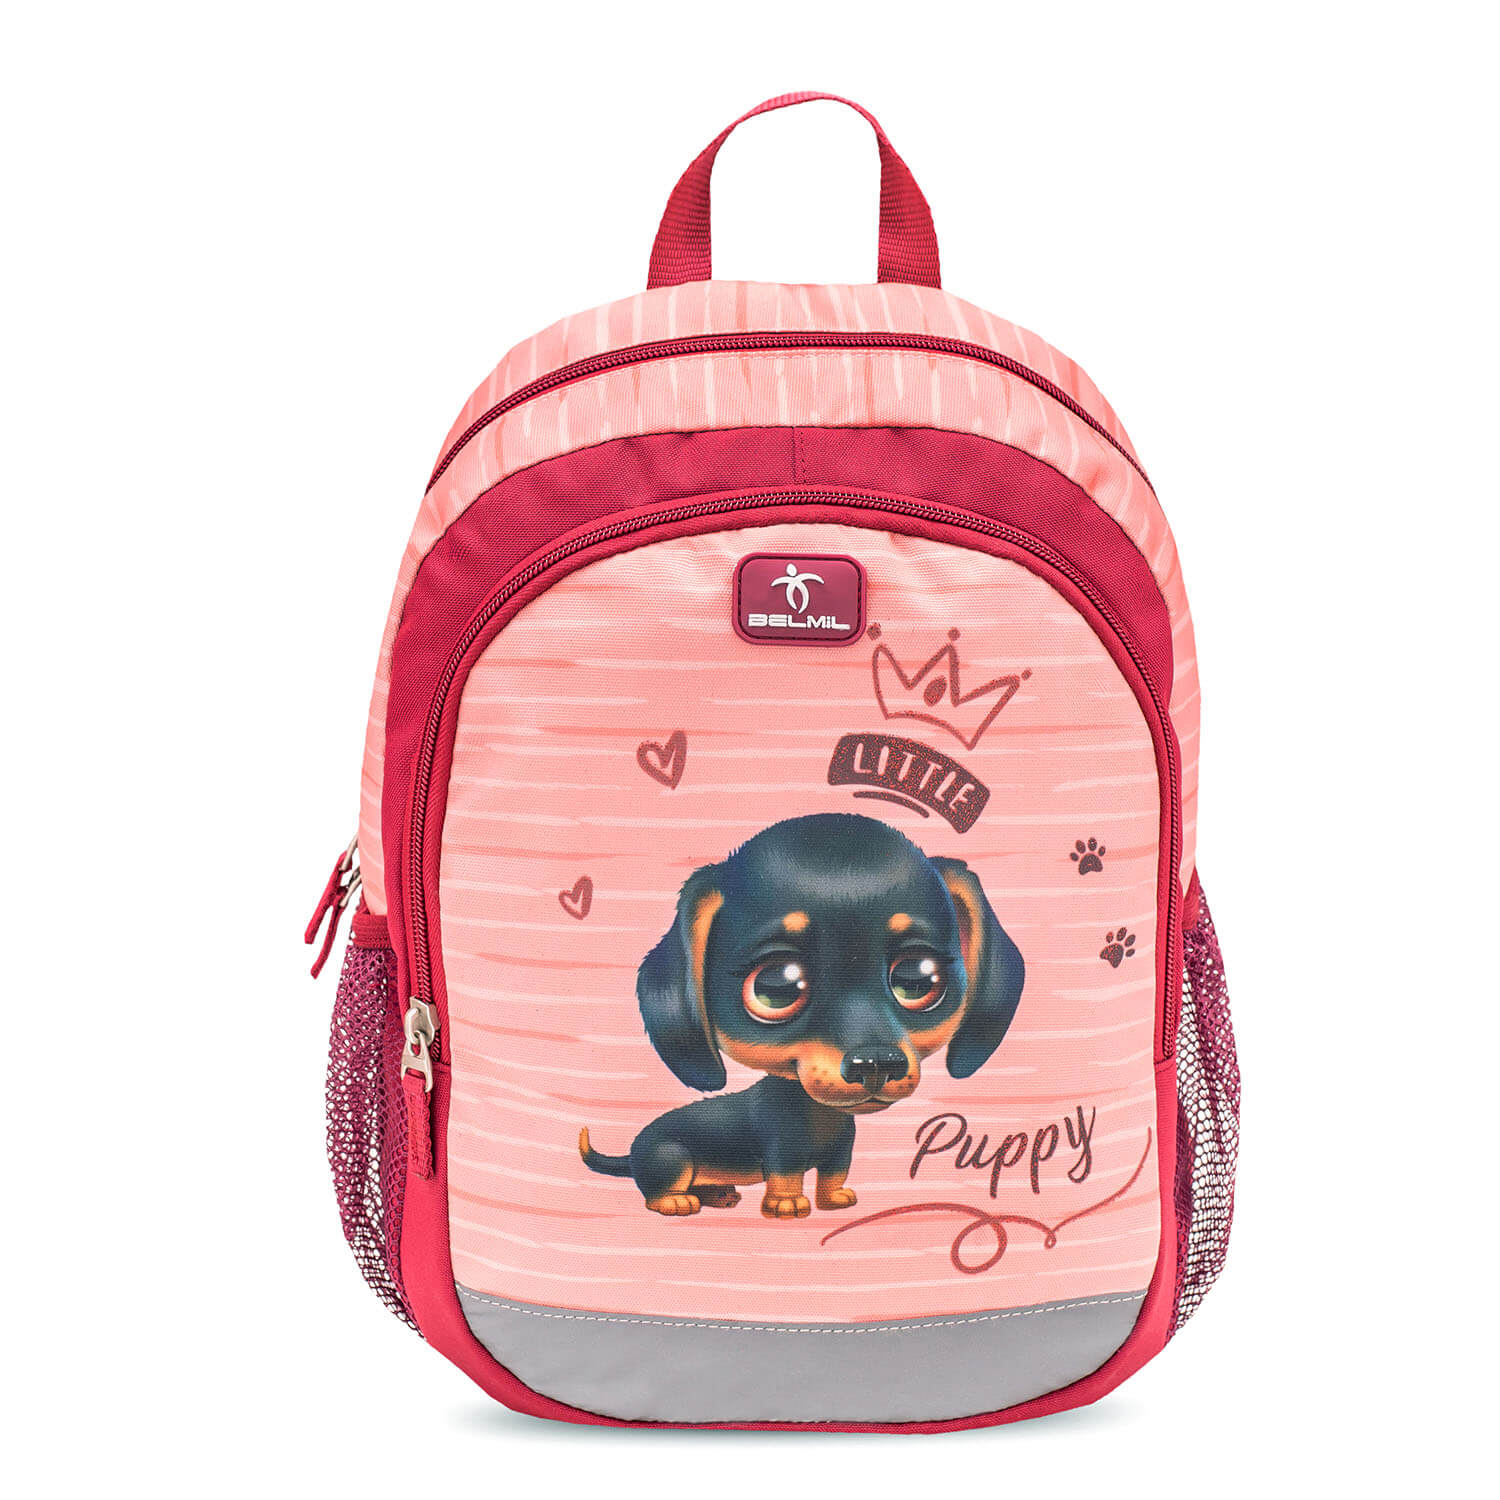 Kiddy Plus Little Puppy Kindergarten Bag mit GRATIS Storage box